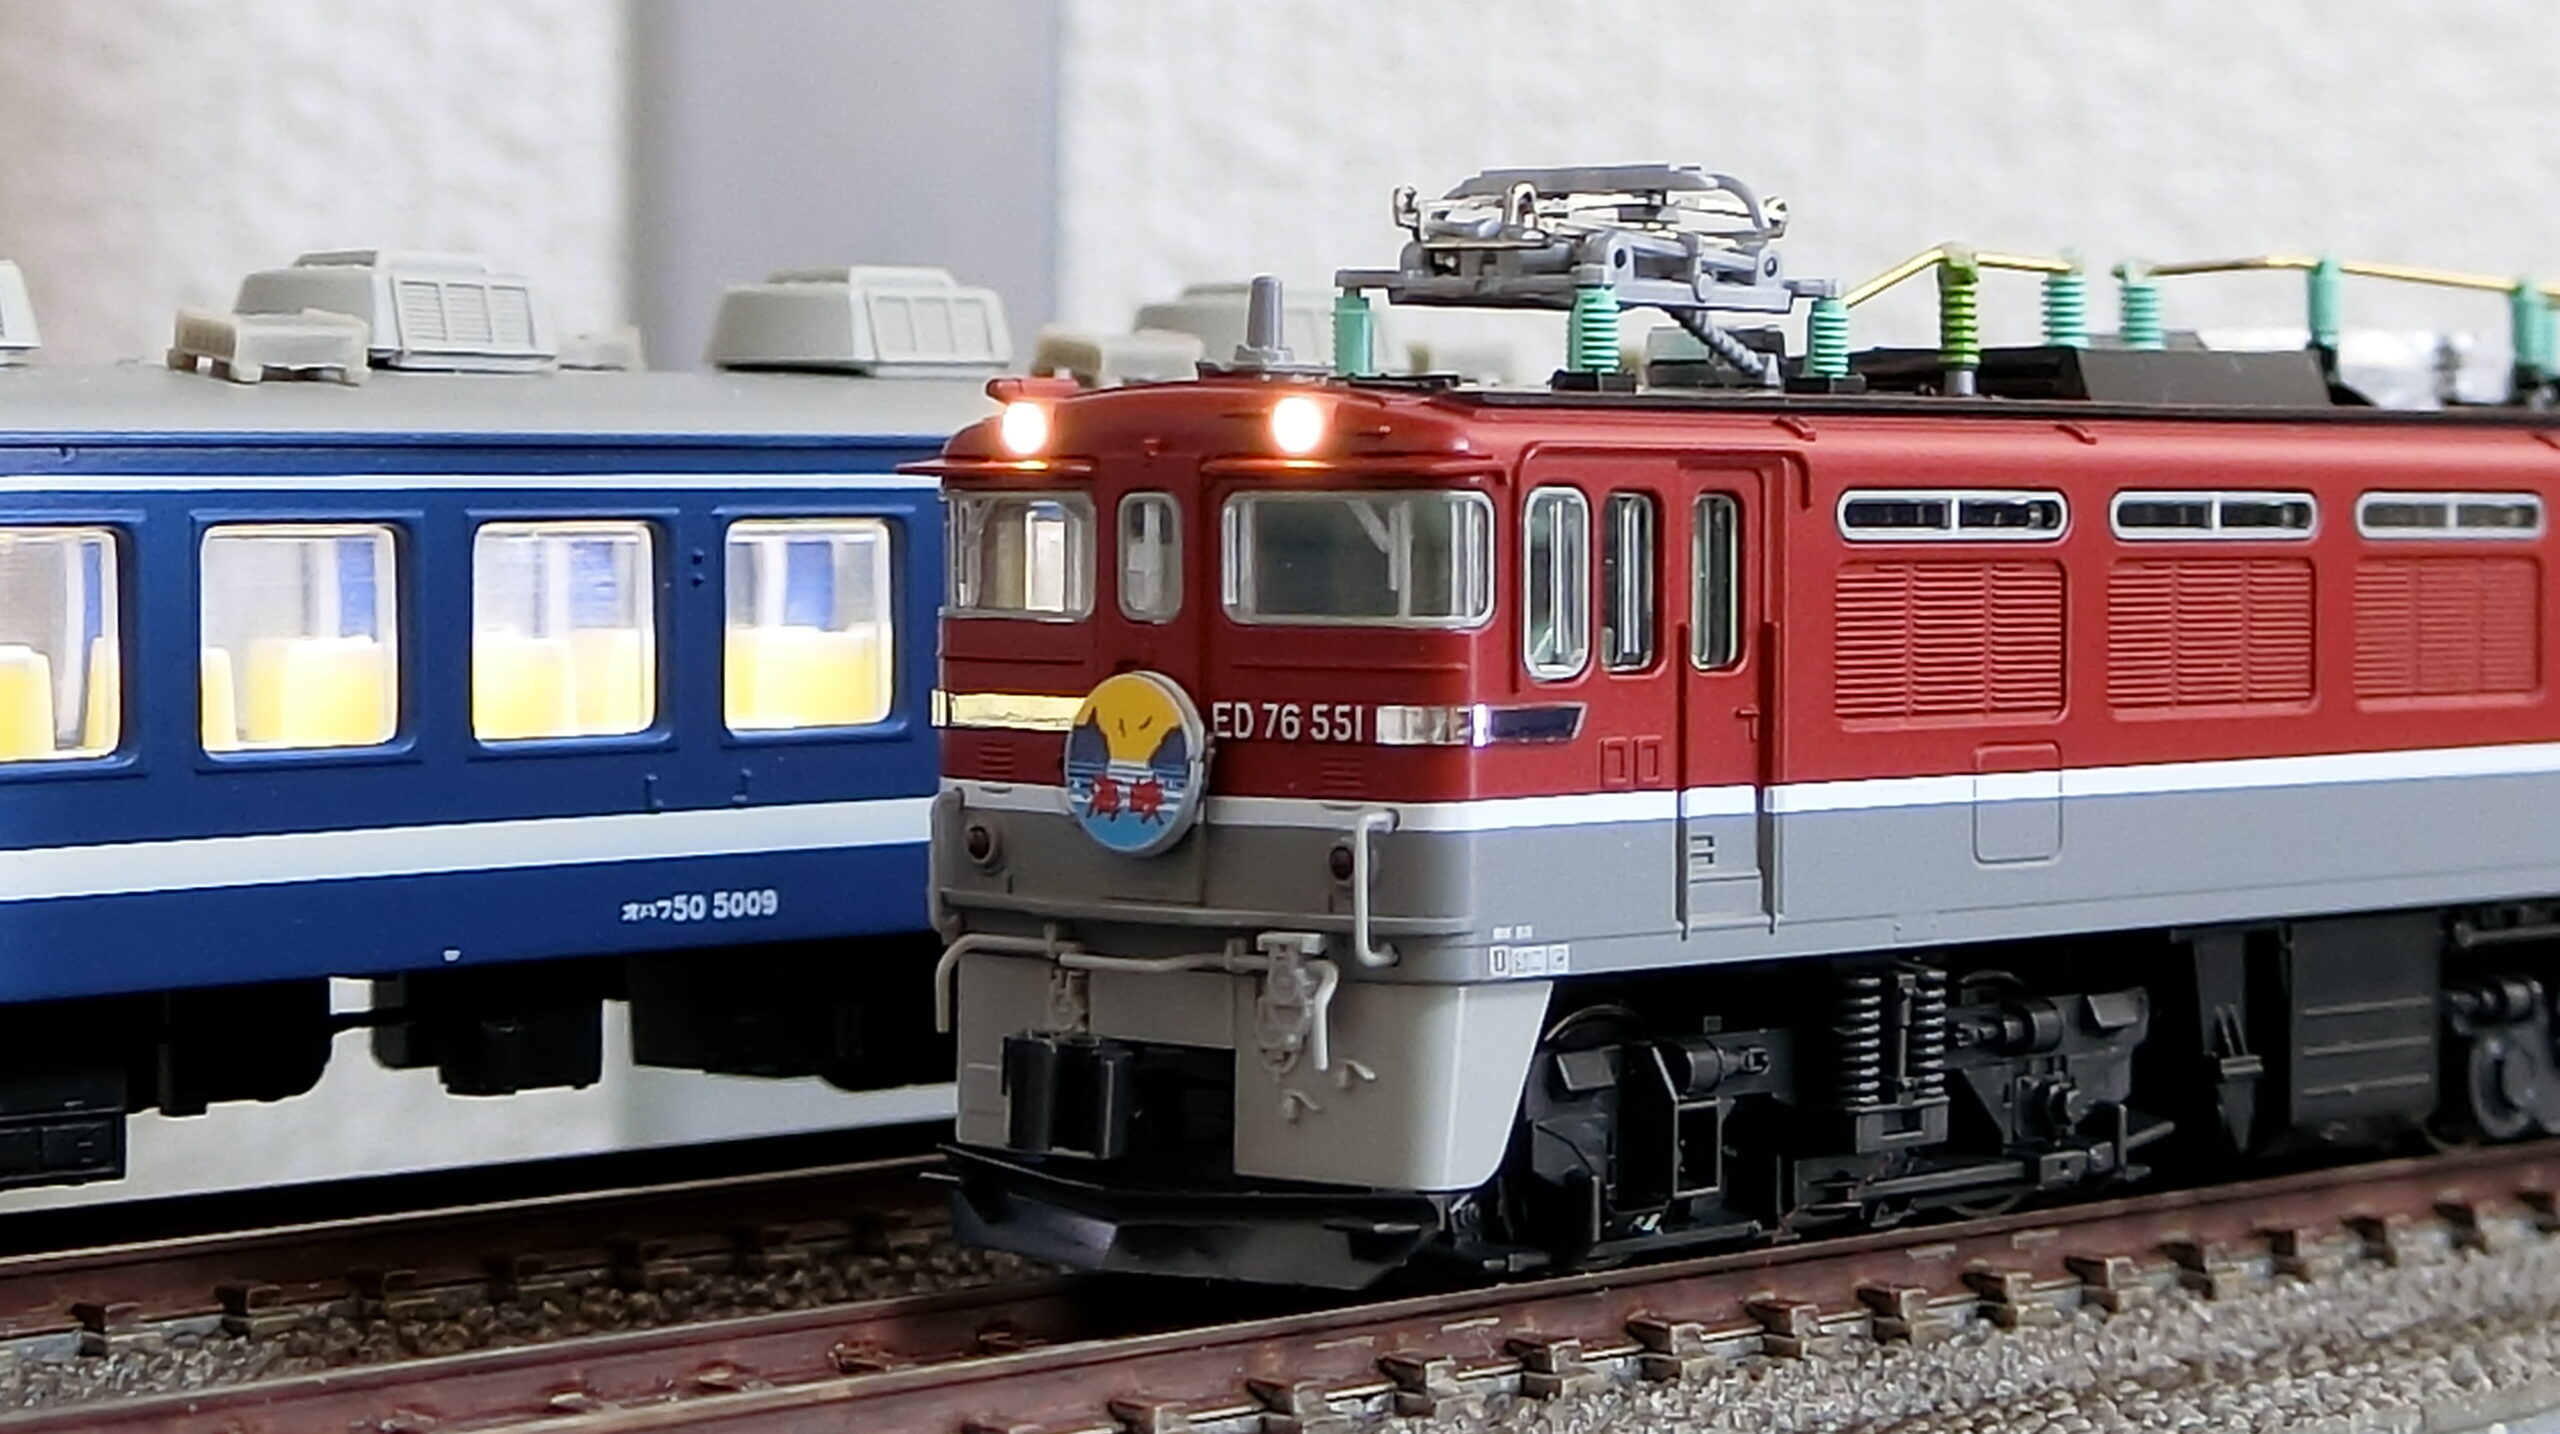 ED76 551タイプ 500 - 鉄道模型